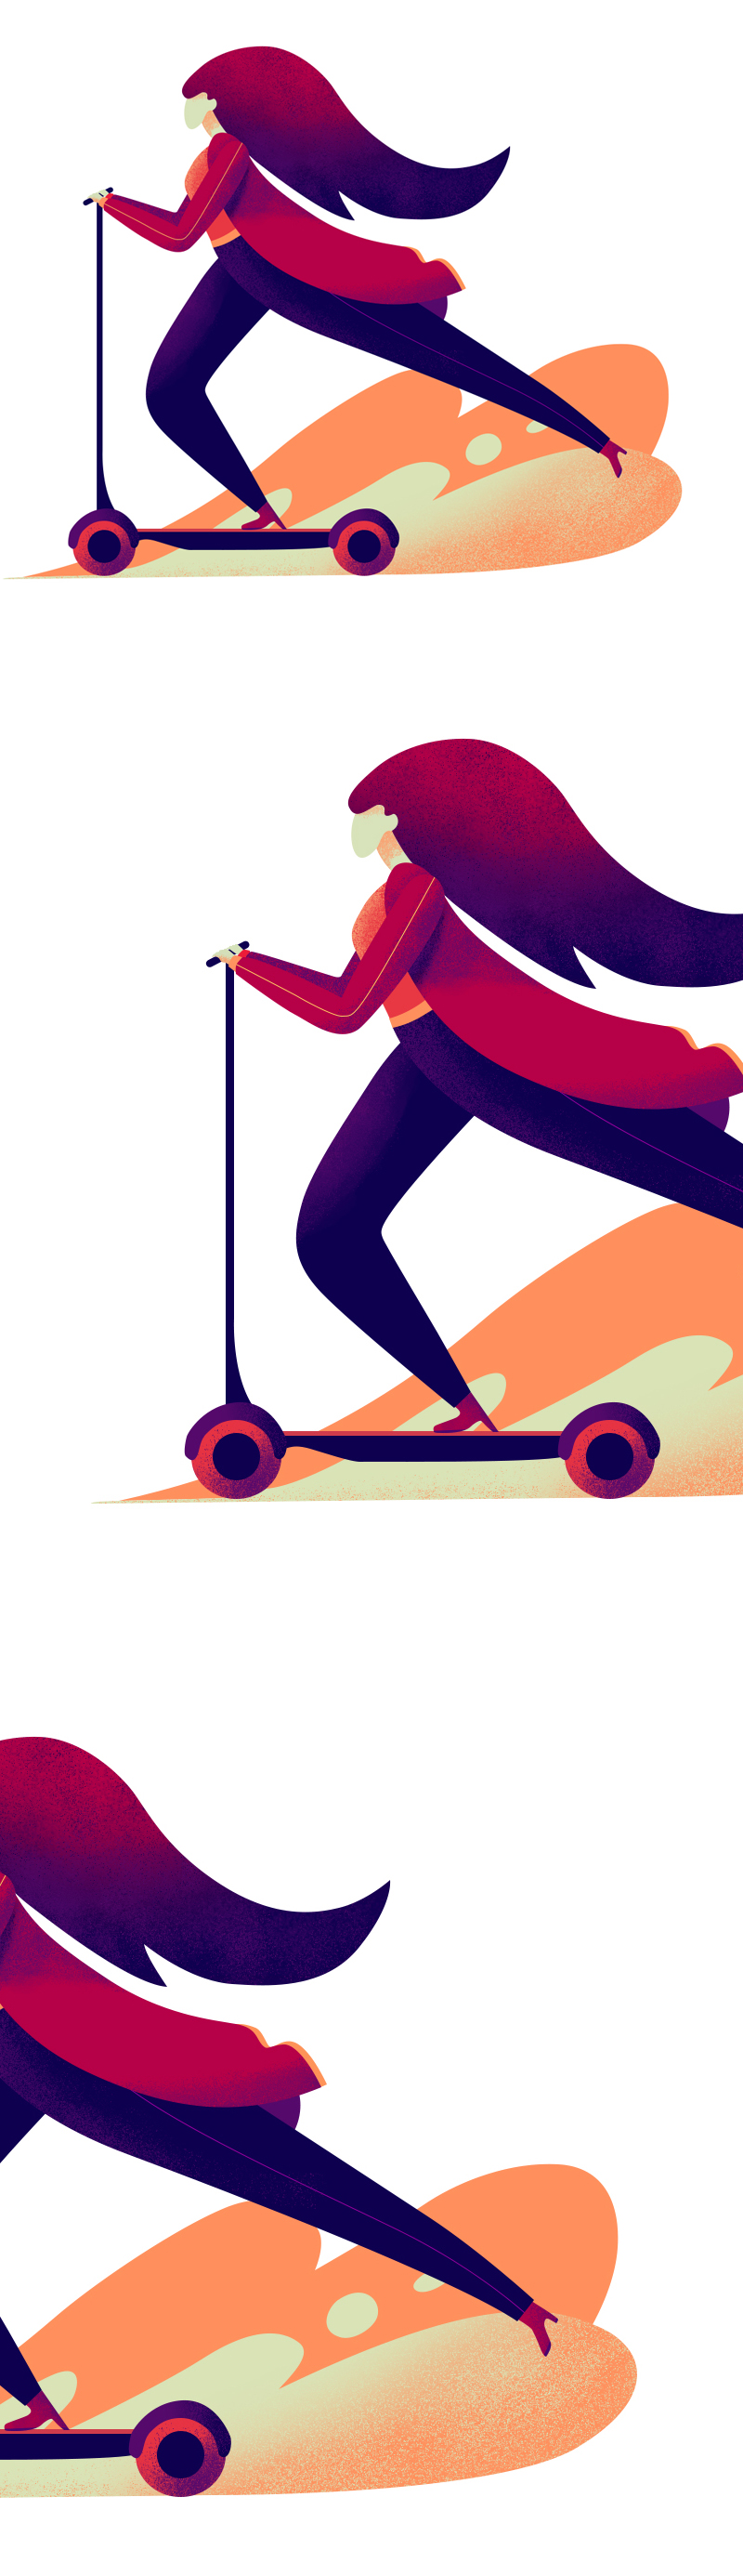 时尚美女和滑板车：PS打造一个美丽的噪点插画